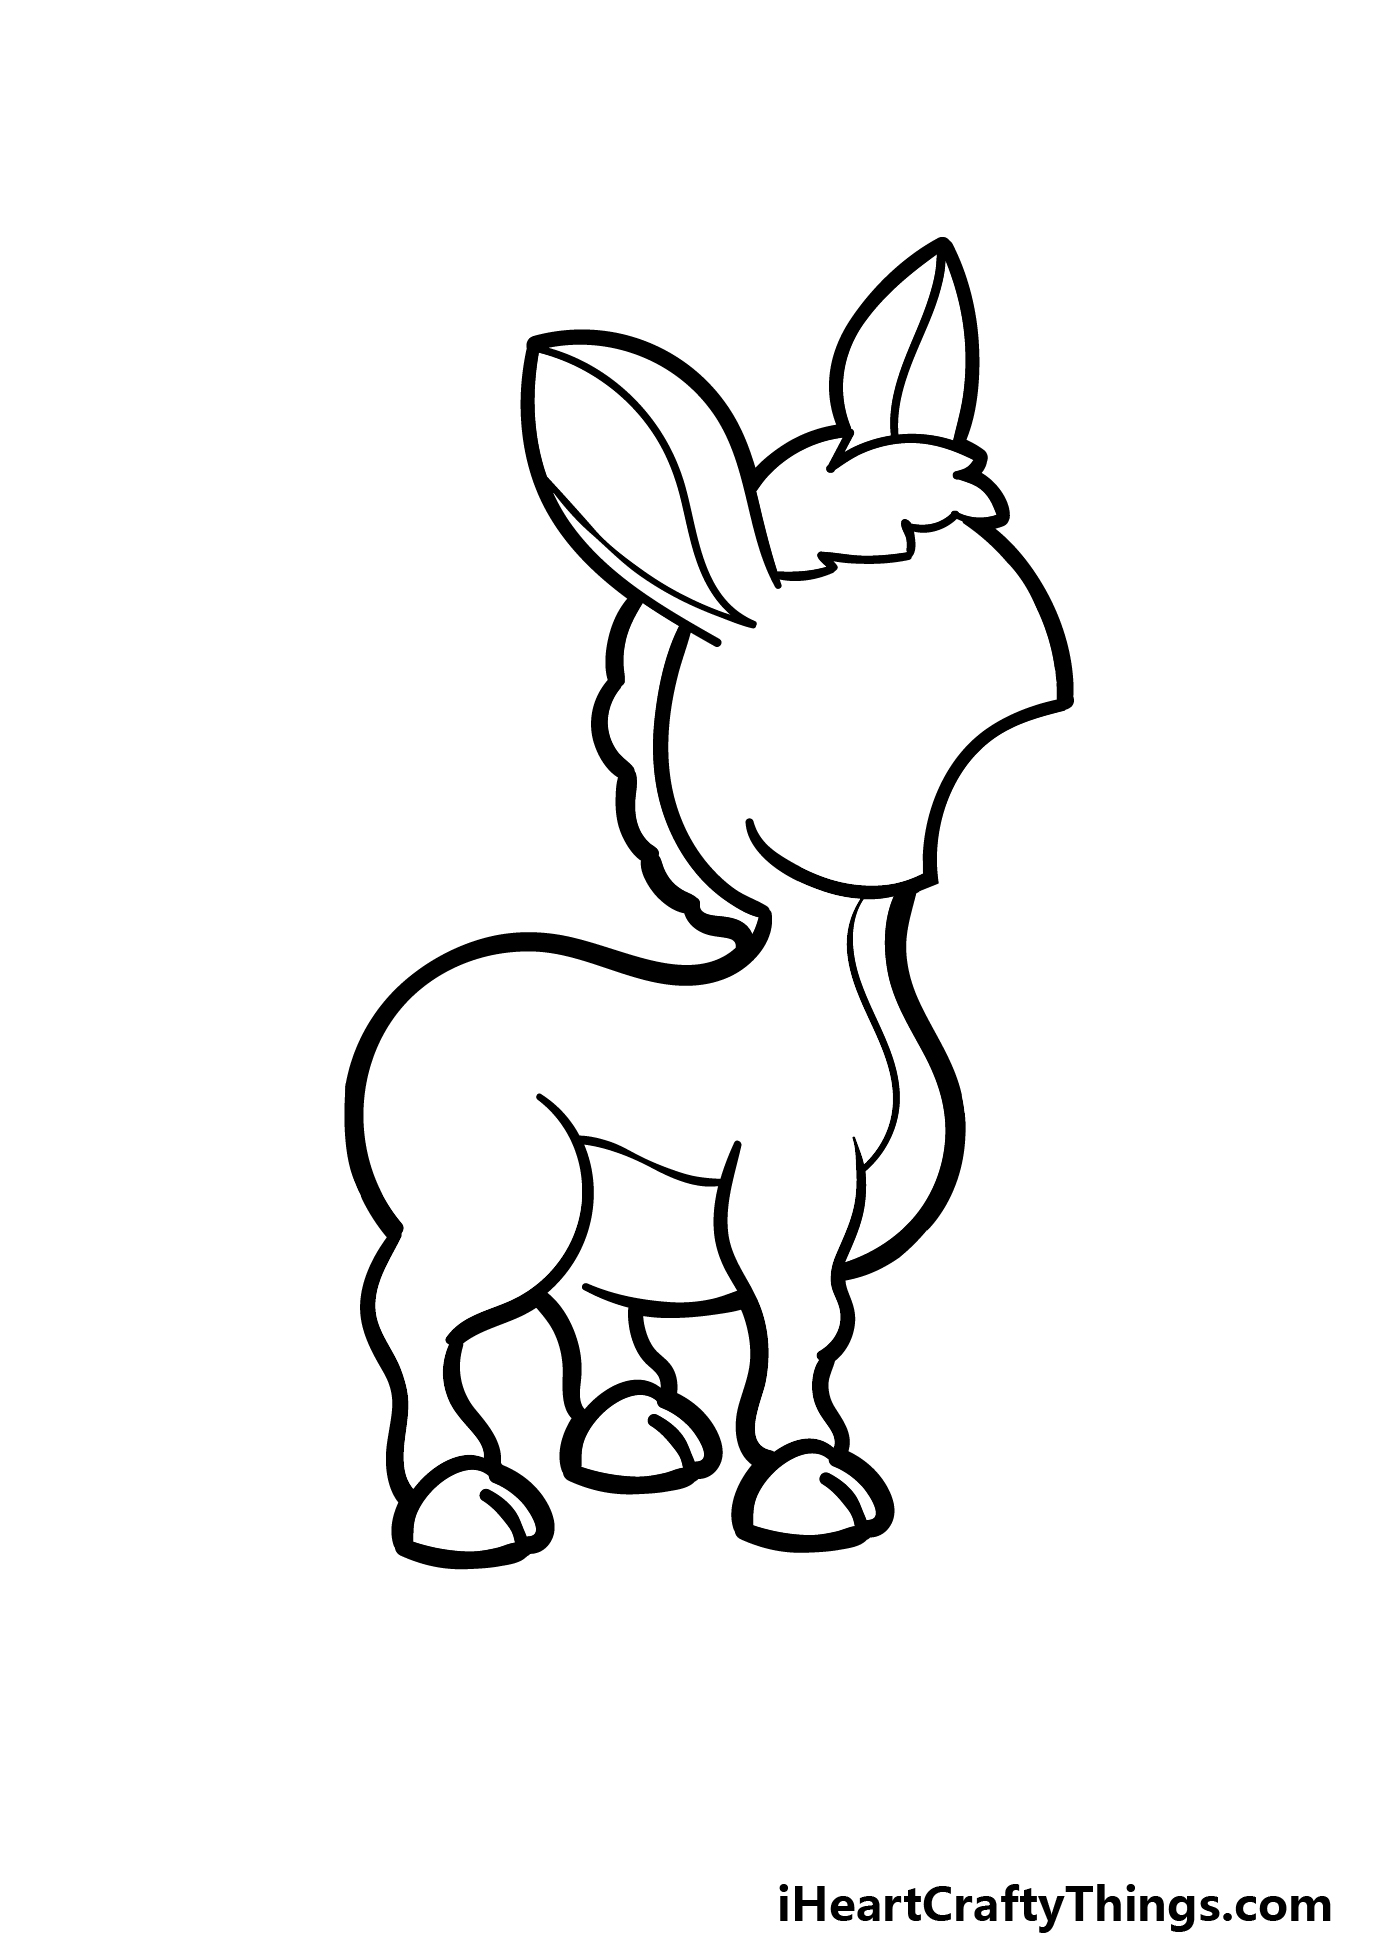 how to draw a cartoon donkey step 3